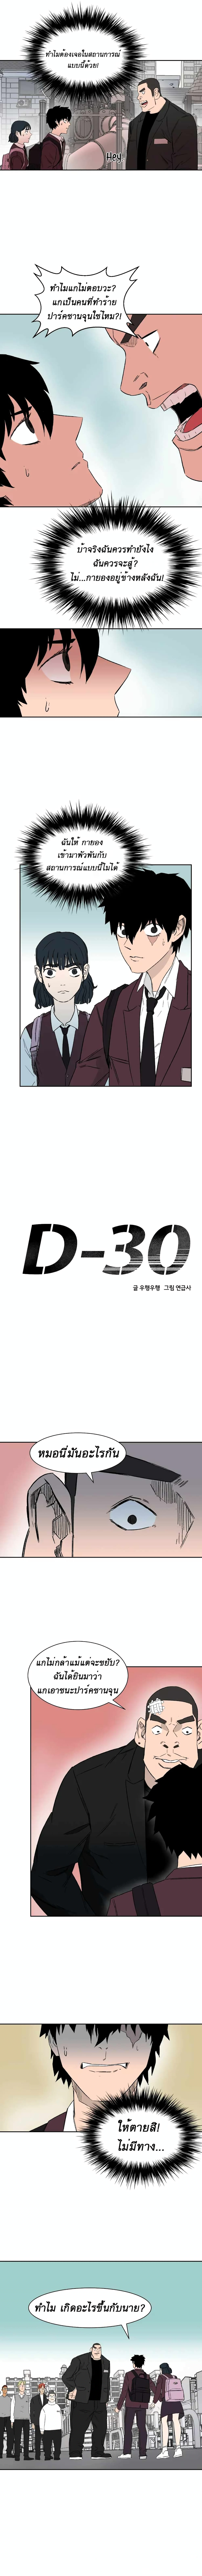 D-30--5-2.jpg